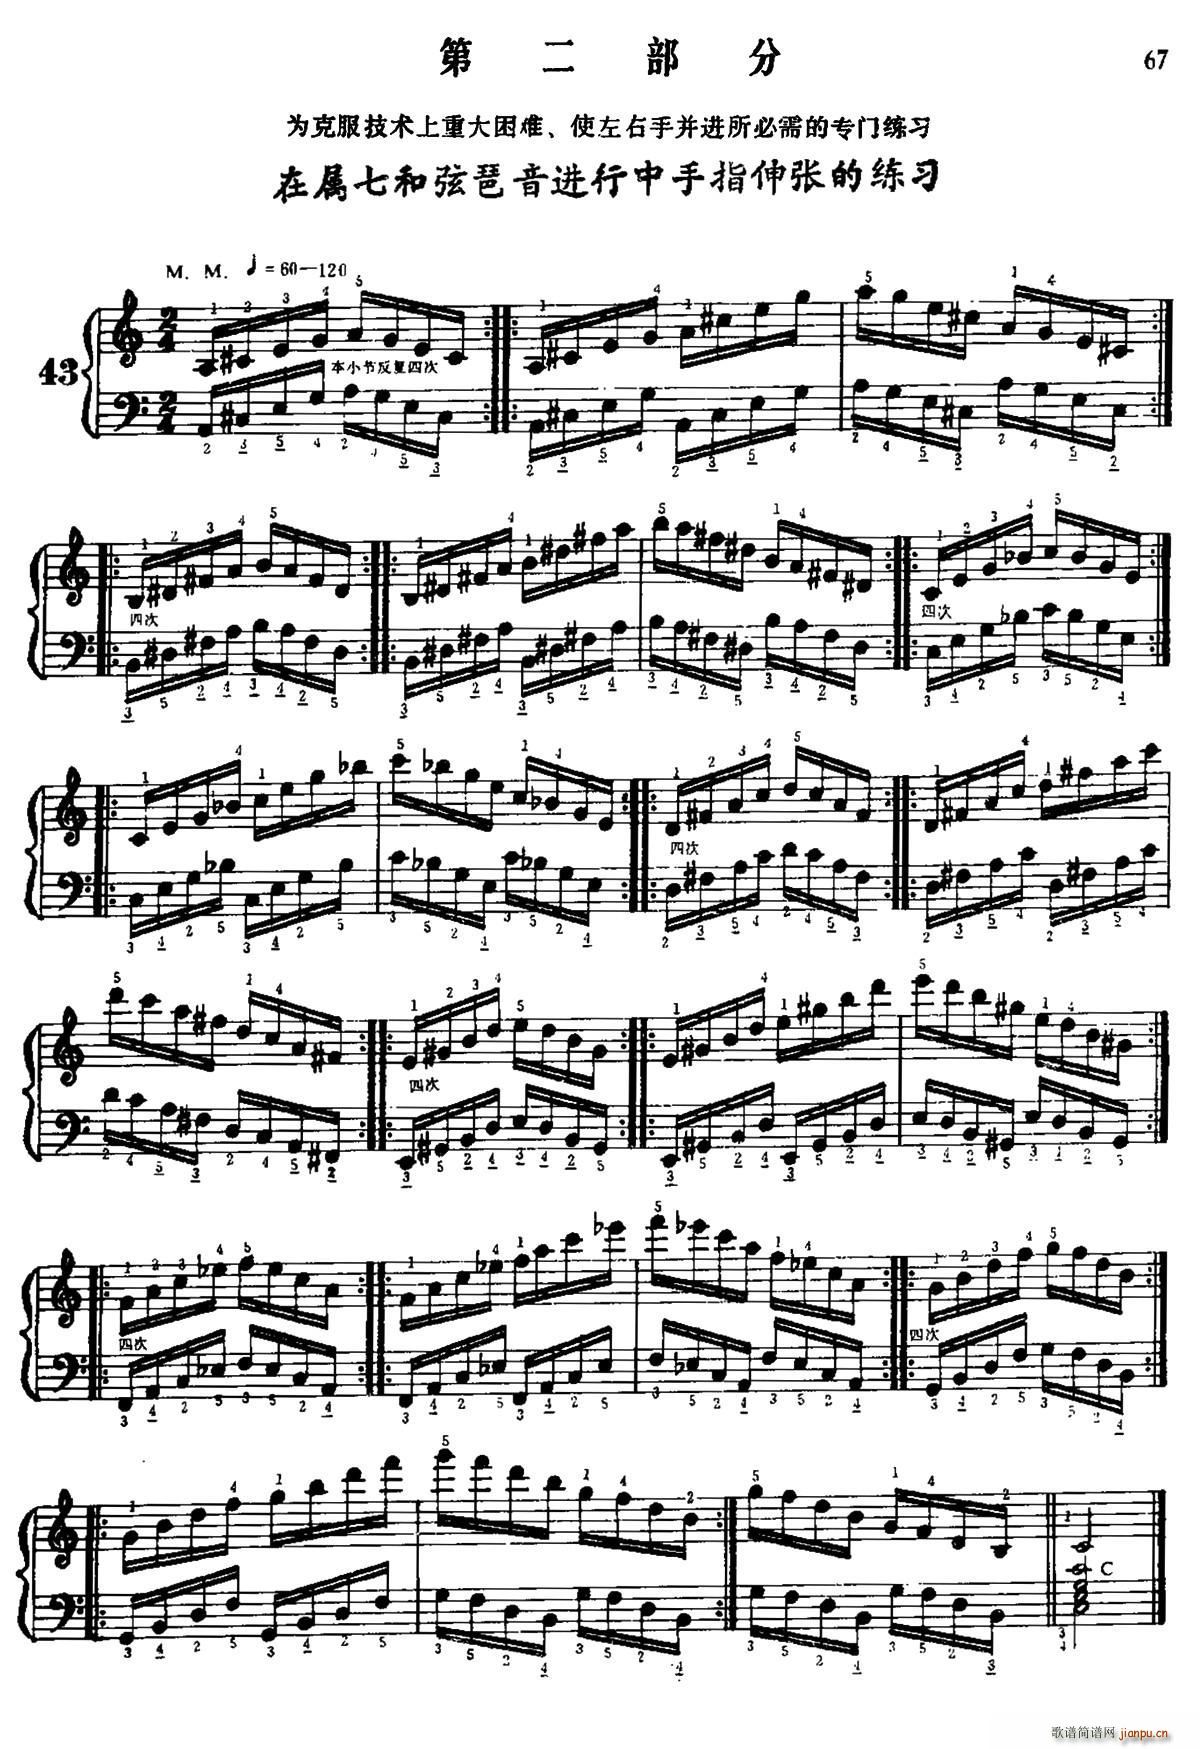 手风琴手指练习 第二部分 在属七和弦琶音进行中手指的伸张练习(手风琴谱)1